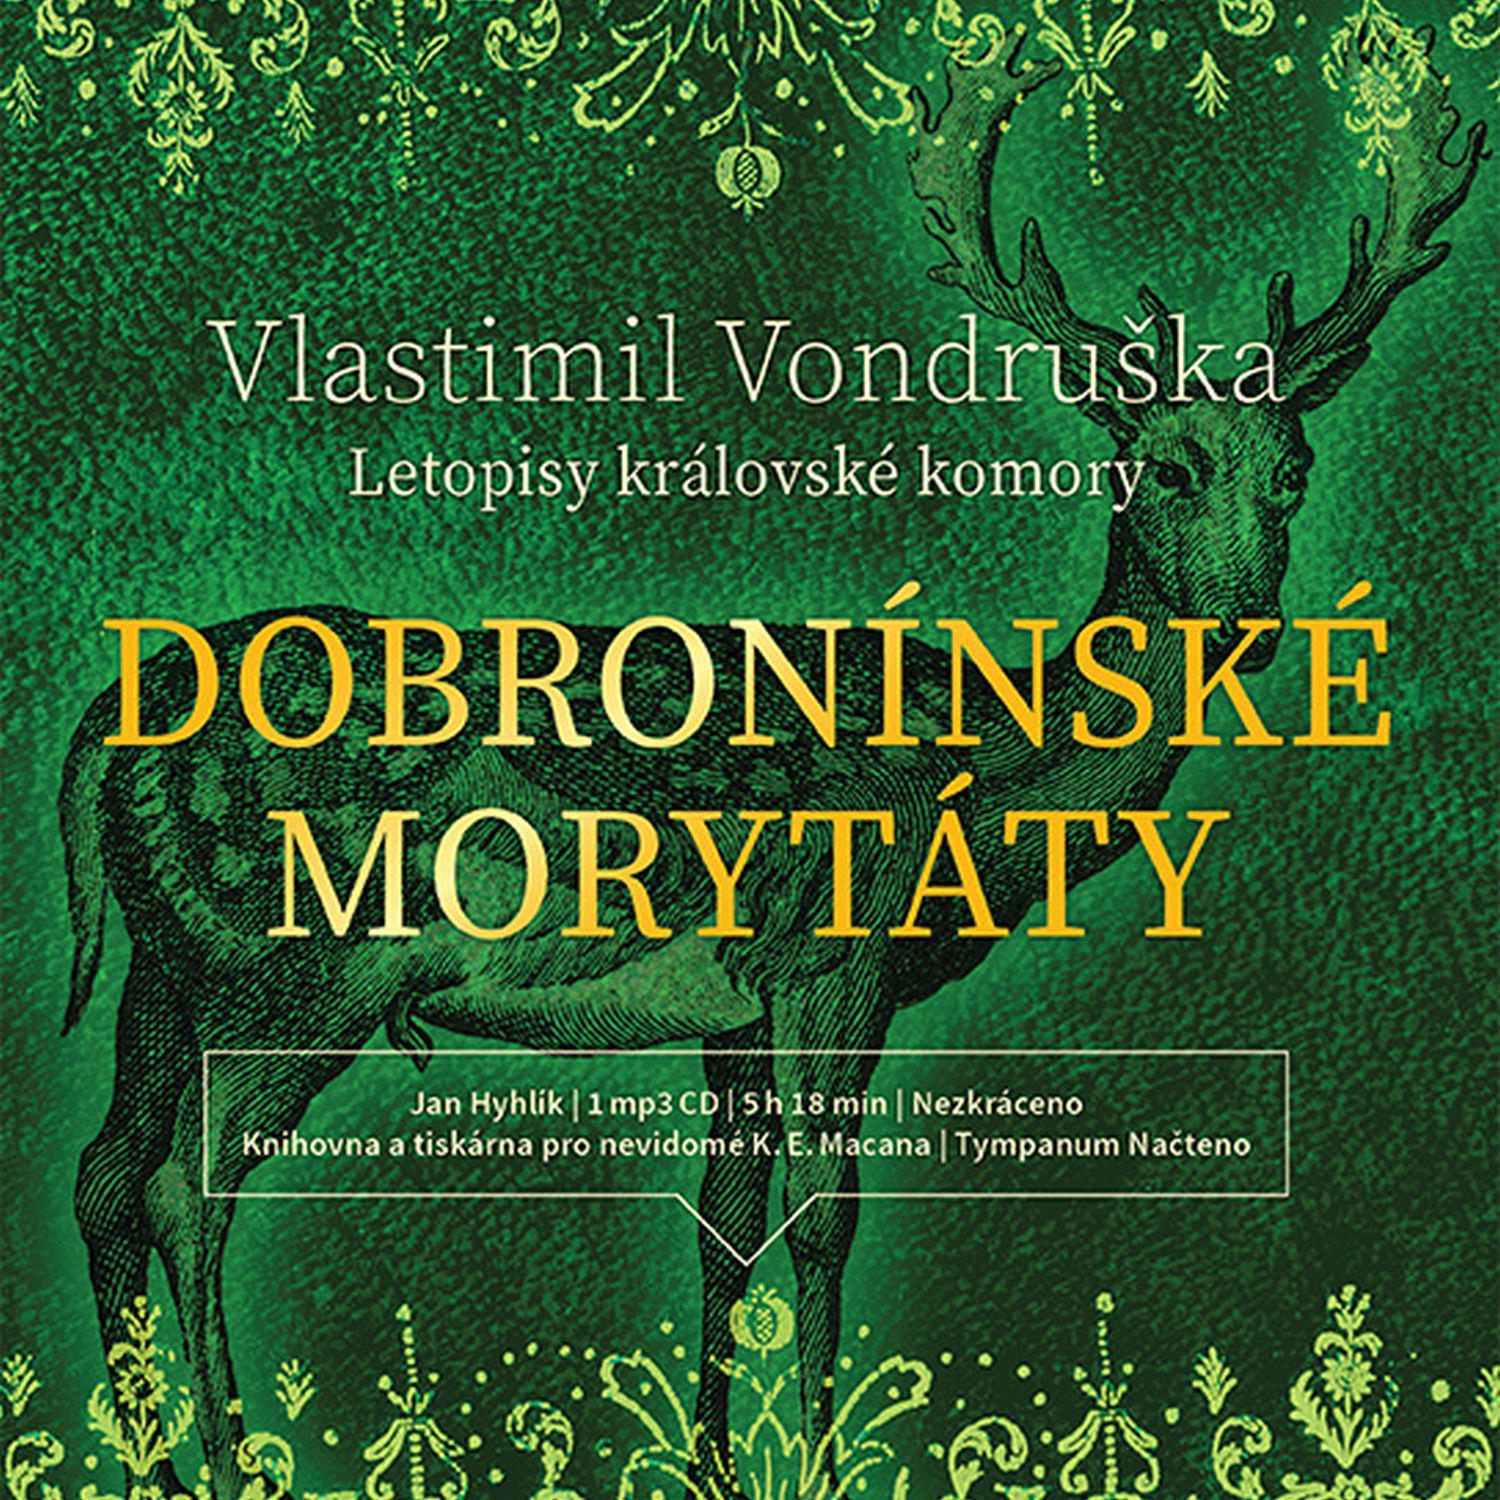 CD Shop - HYHLIK JAN VONDRUSKA: DOBRONINSKE MORYTATY - LETOPISY KRALOVSKE KOMORY (MP3-CD)